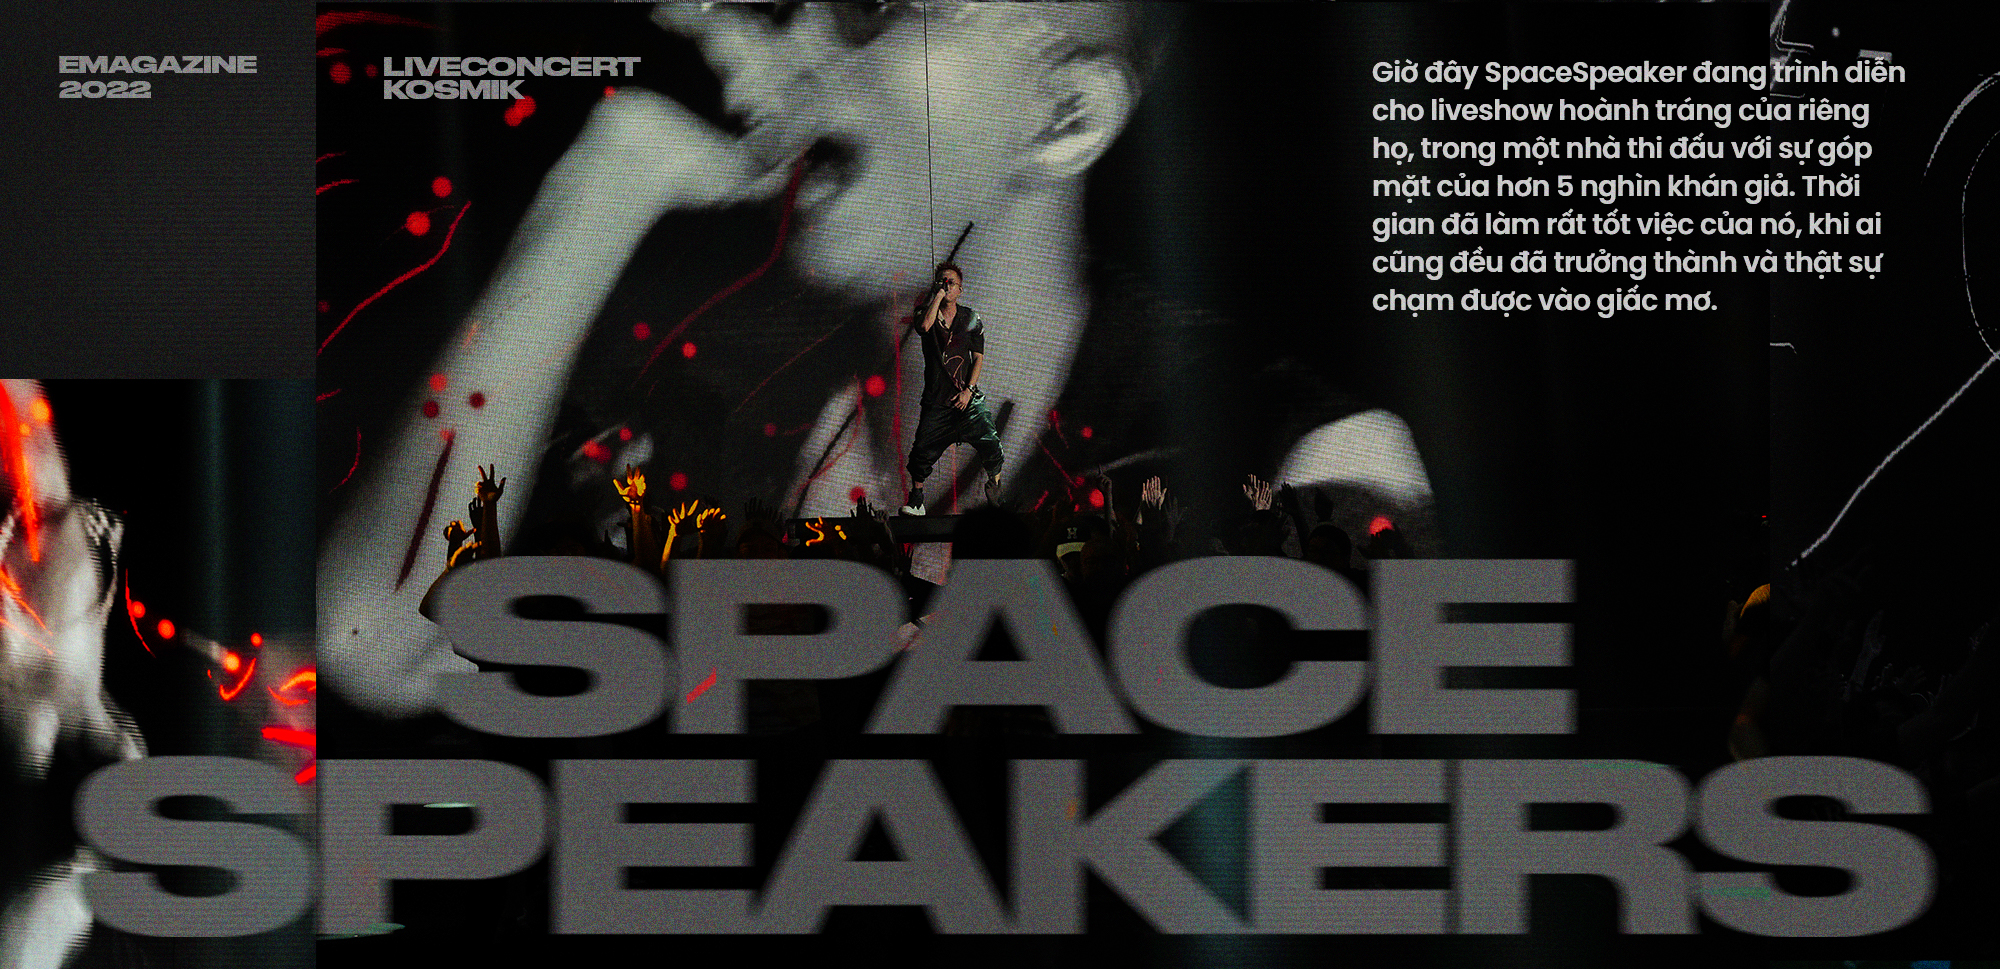 SpaceSpeakers và live-concert KOSMIK : Câu trả lời cho những giấc mơ tuổi trẻ - Ảnh 11.